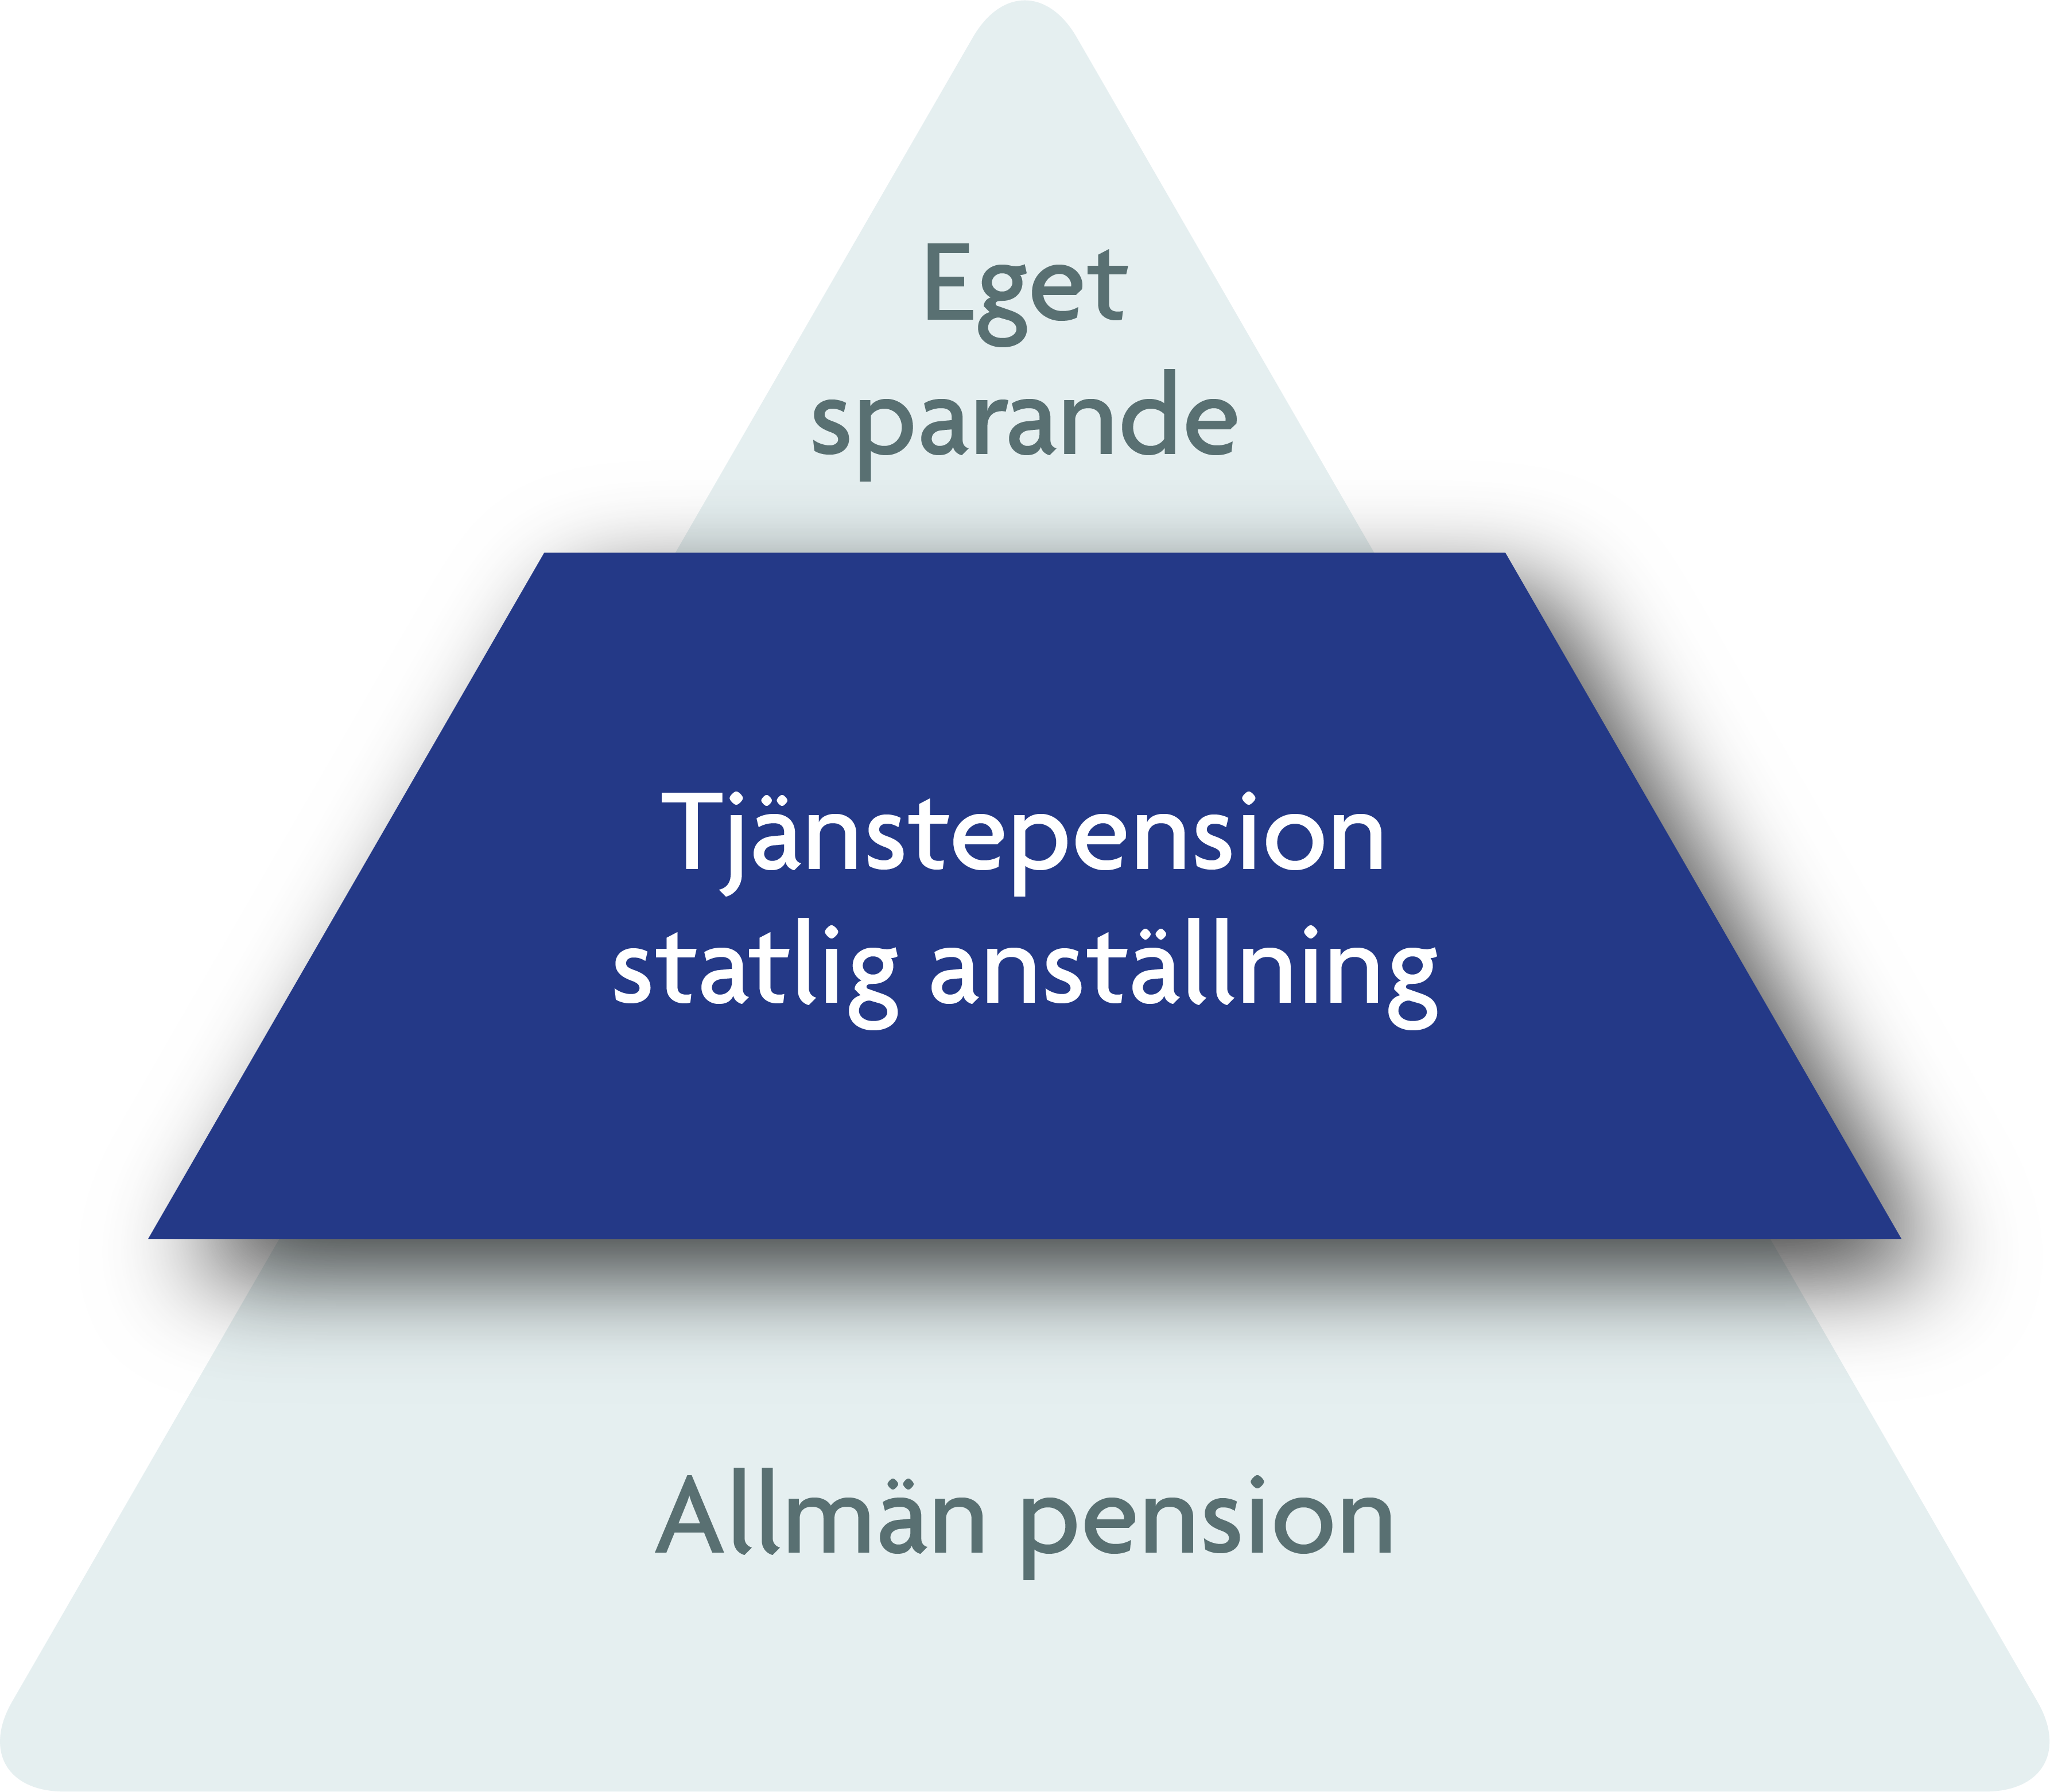 Pensionspyramiden med allmän pension i botten, tjänstepension i mitten och eget sparande längst upp